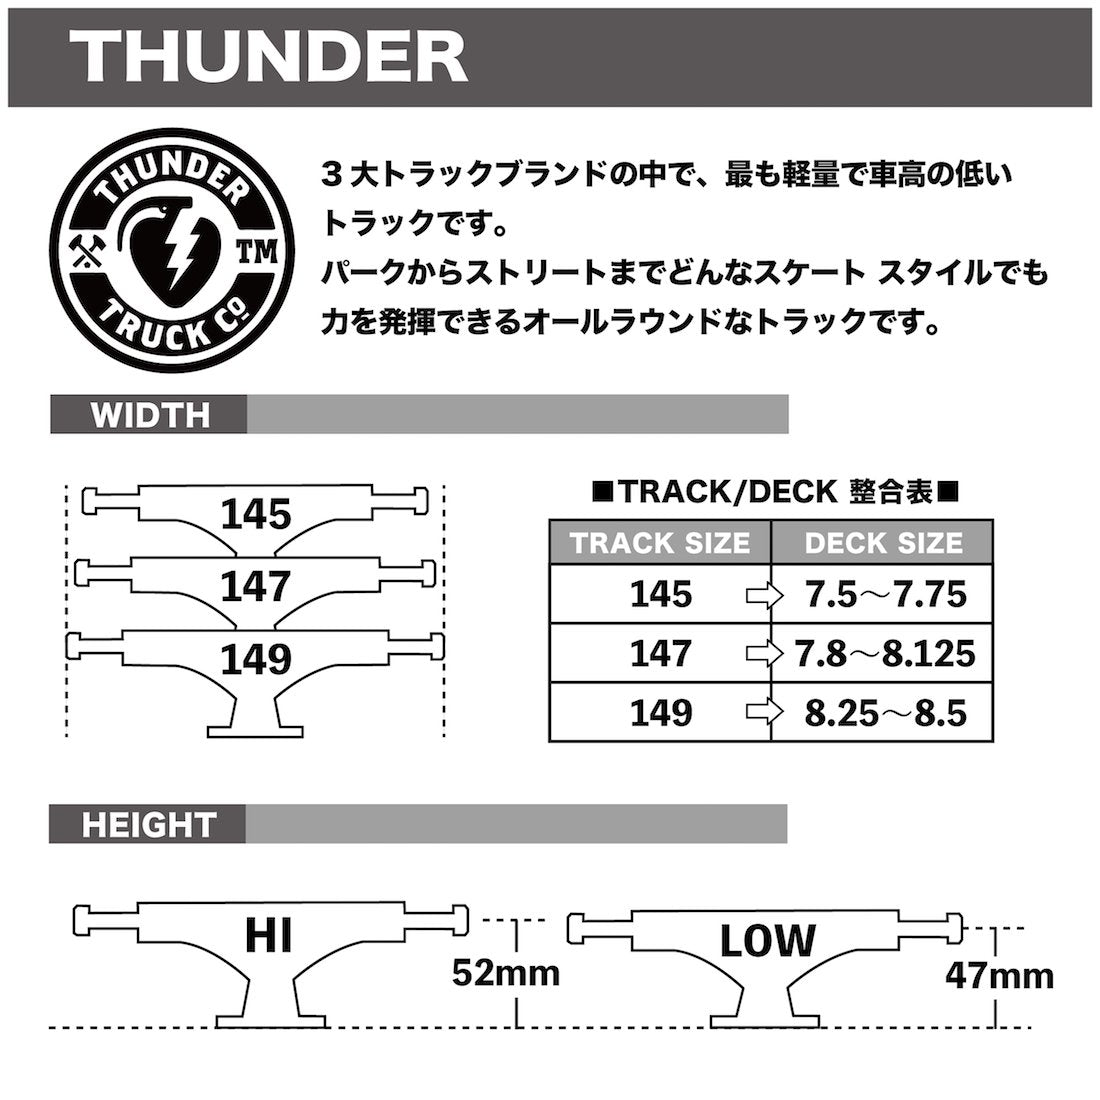 【THUNDER】Strikes -147 HI